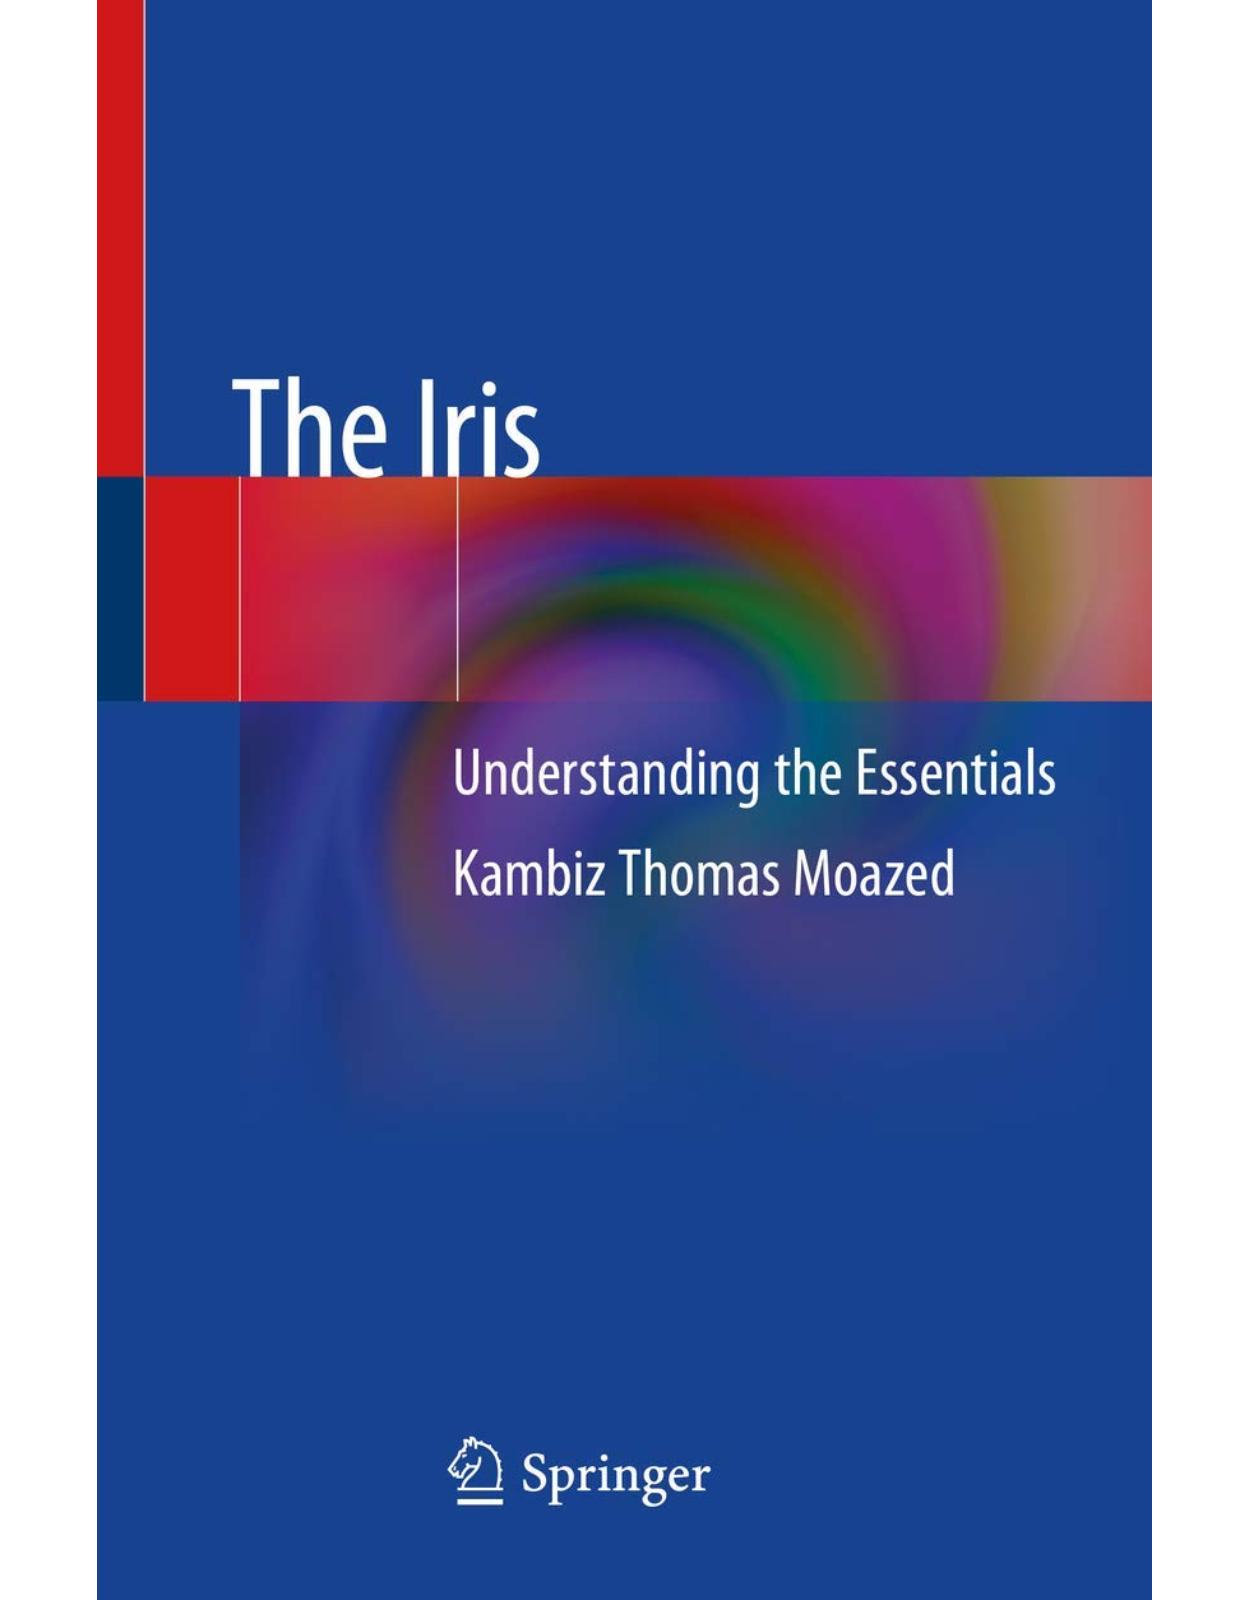 The Iris: Understanding the Essentials